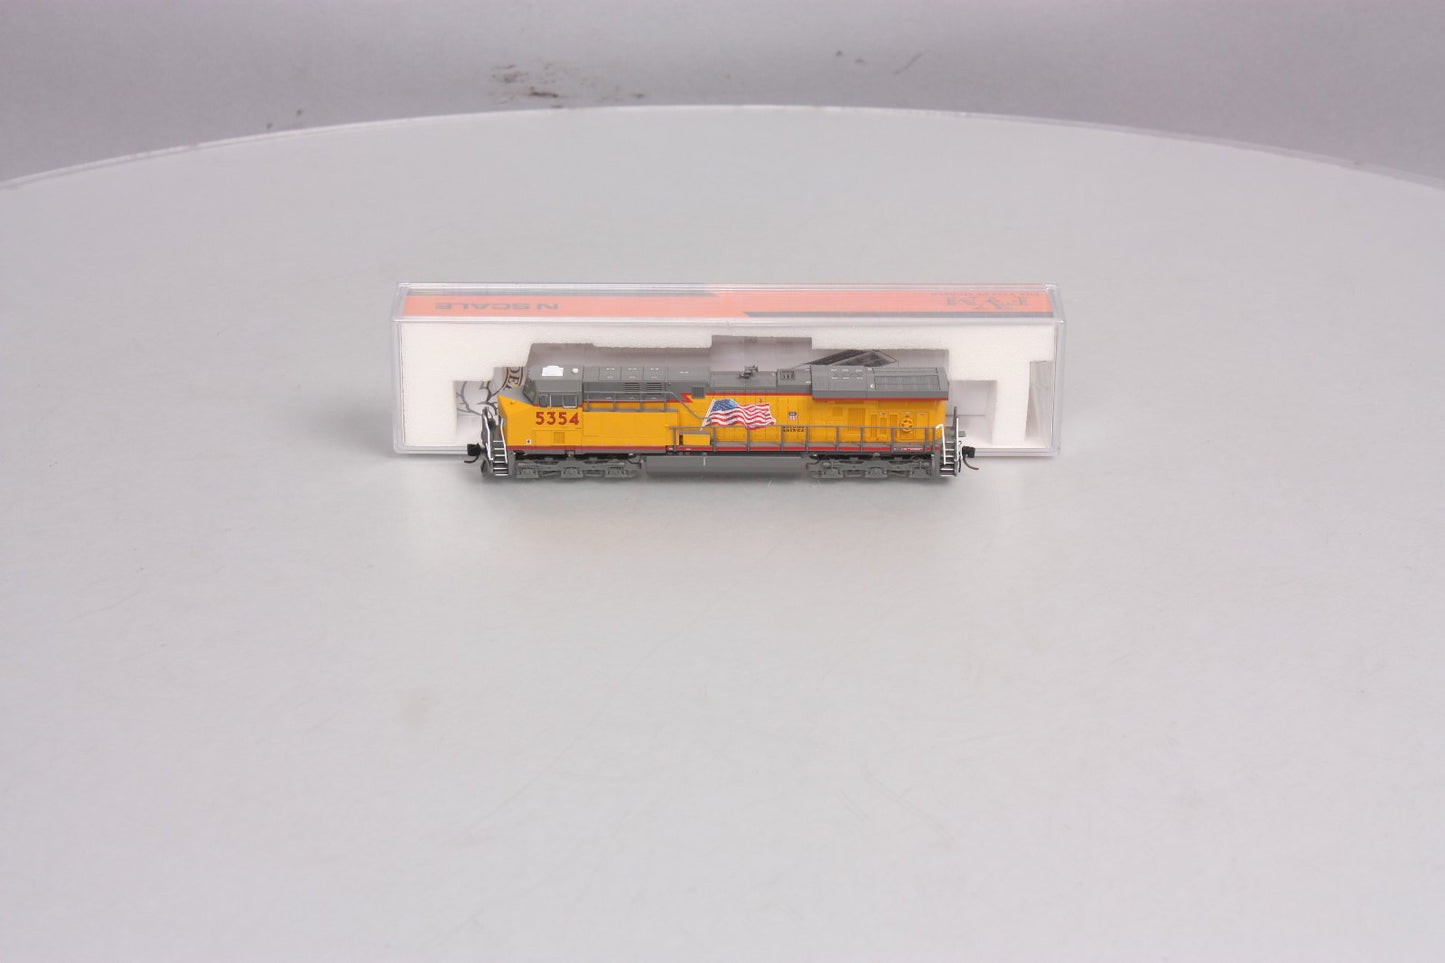 Fox Valley Models 70101 N Scale Union Pacific GE ES44AC Diesel Locomotive #5354